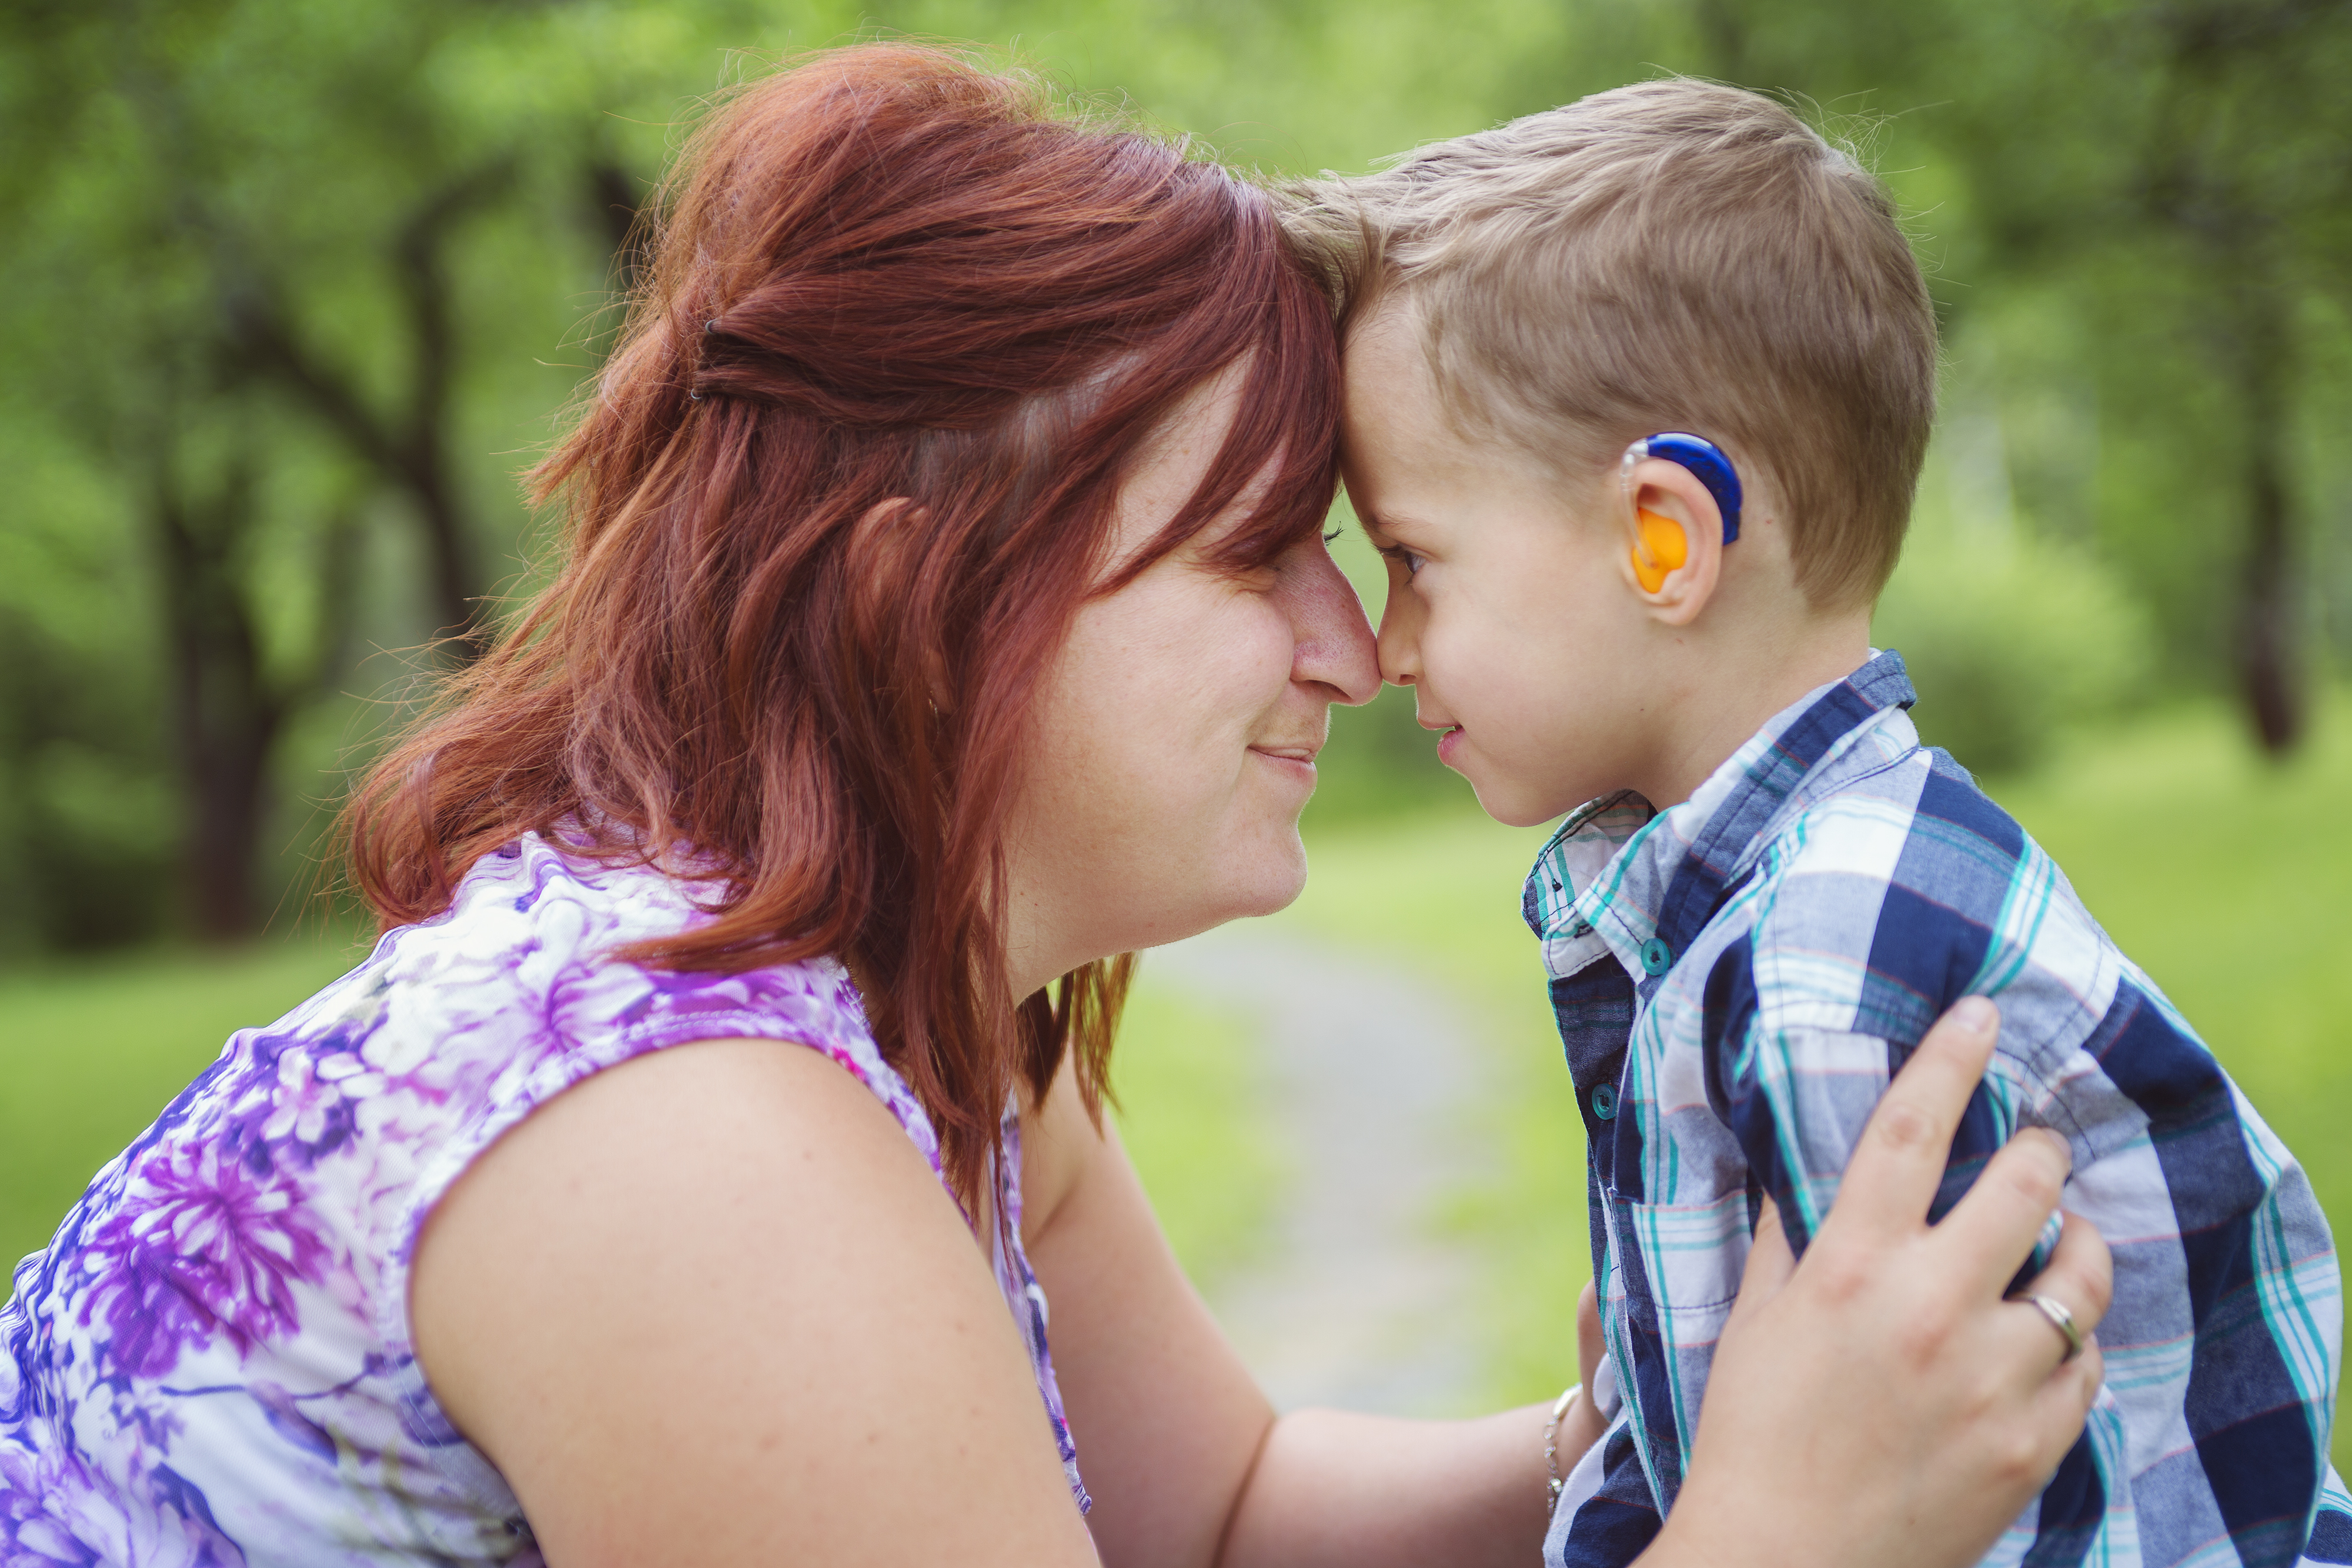 Слышащие дети в семье глухих